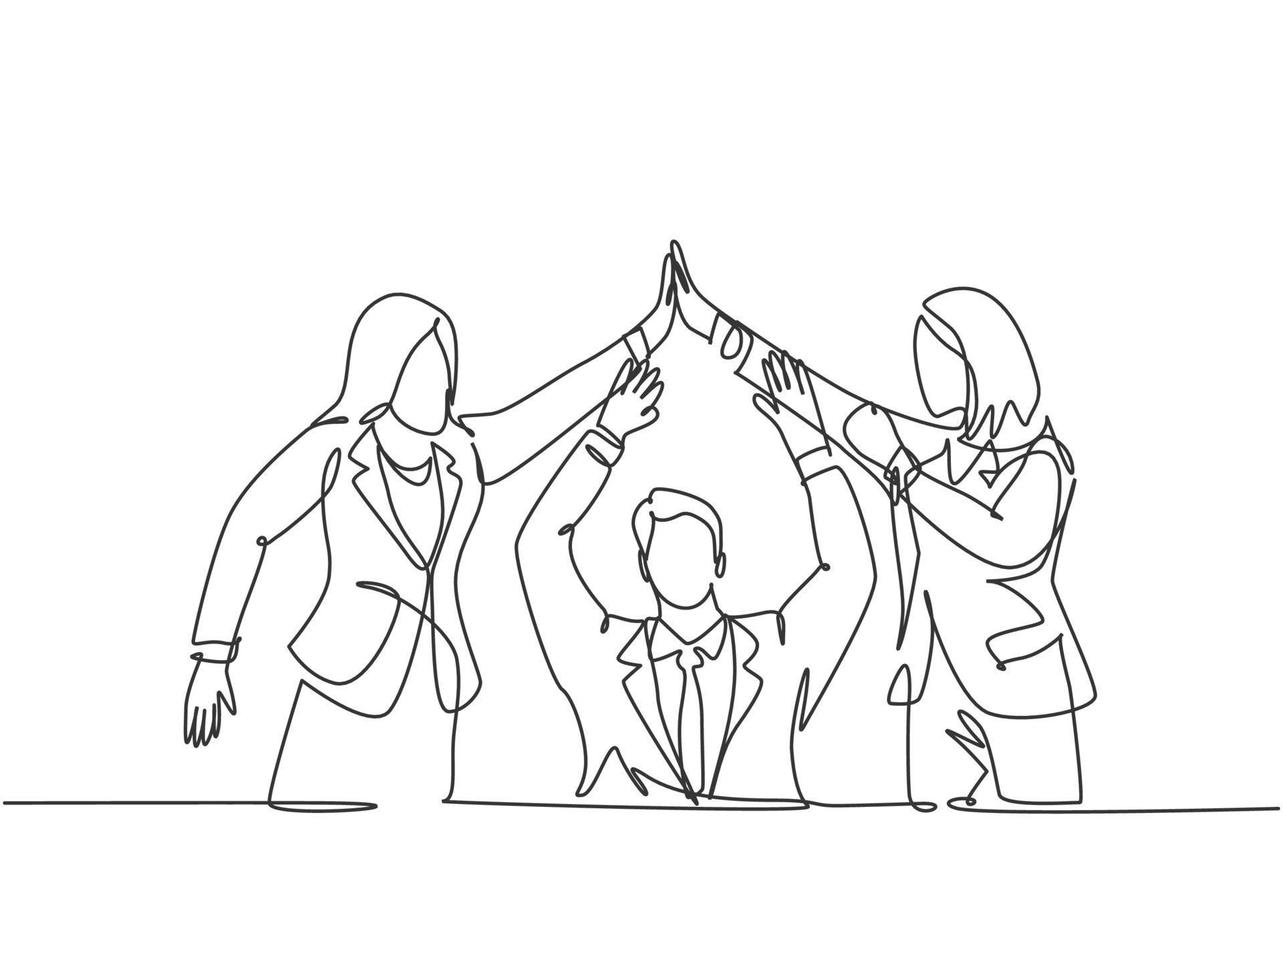 un gruppo di disegno a tratteggio di due giovani assistenti manager che celebrano il loro obiettivo successivo con il gesto del cinque. illustrazione grafica vettoriale di disegno di linea continua di concetto di affare di affari